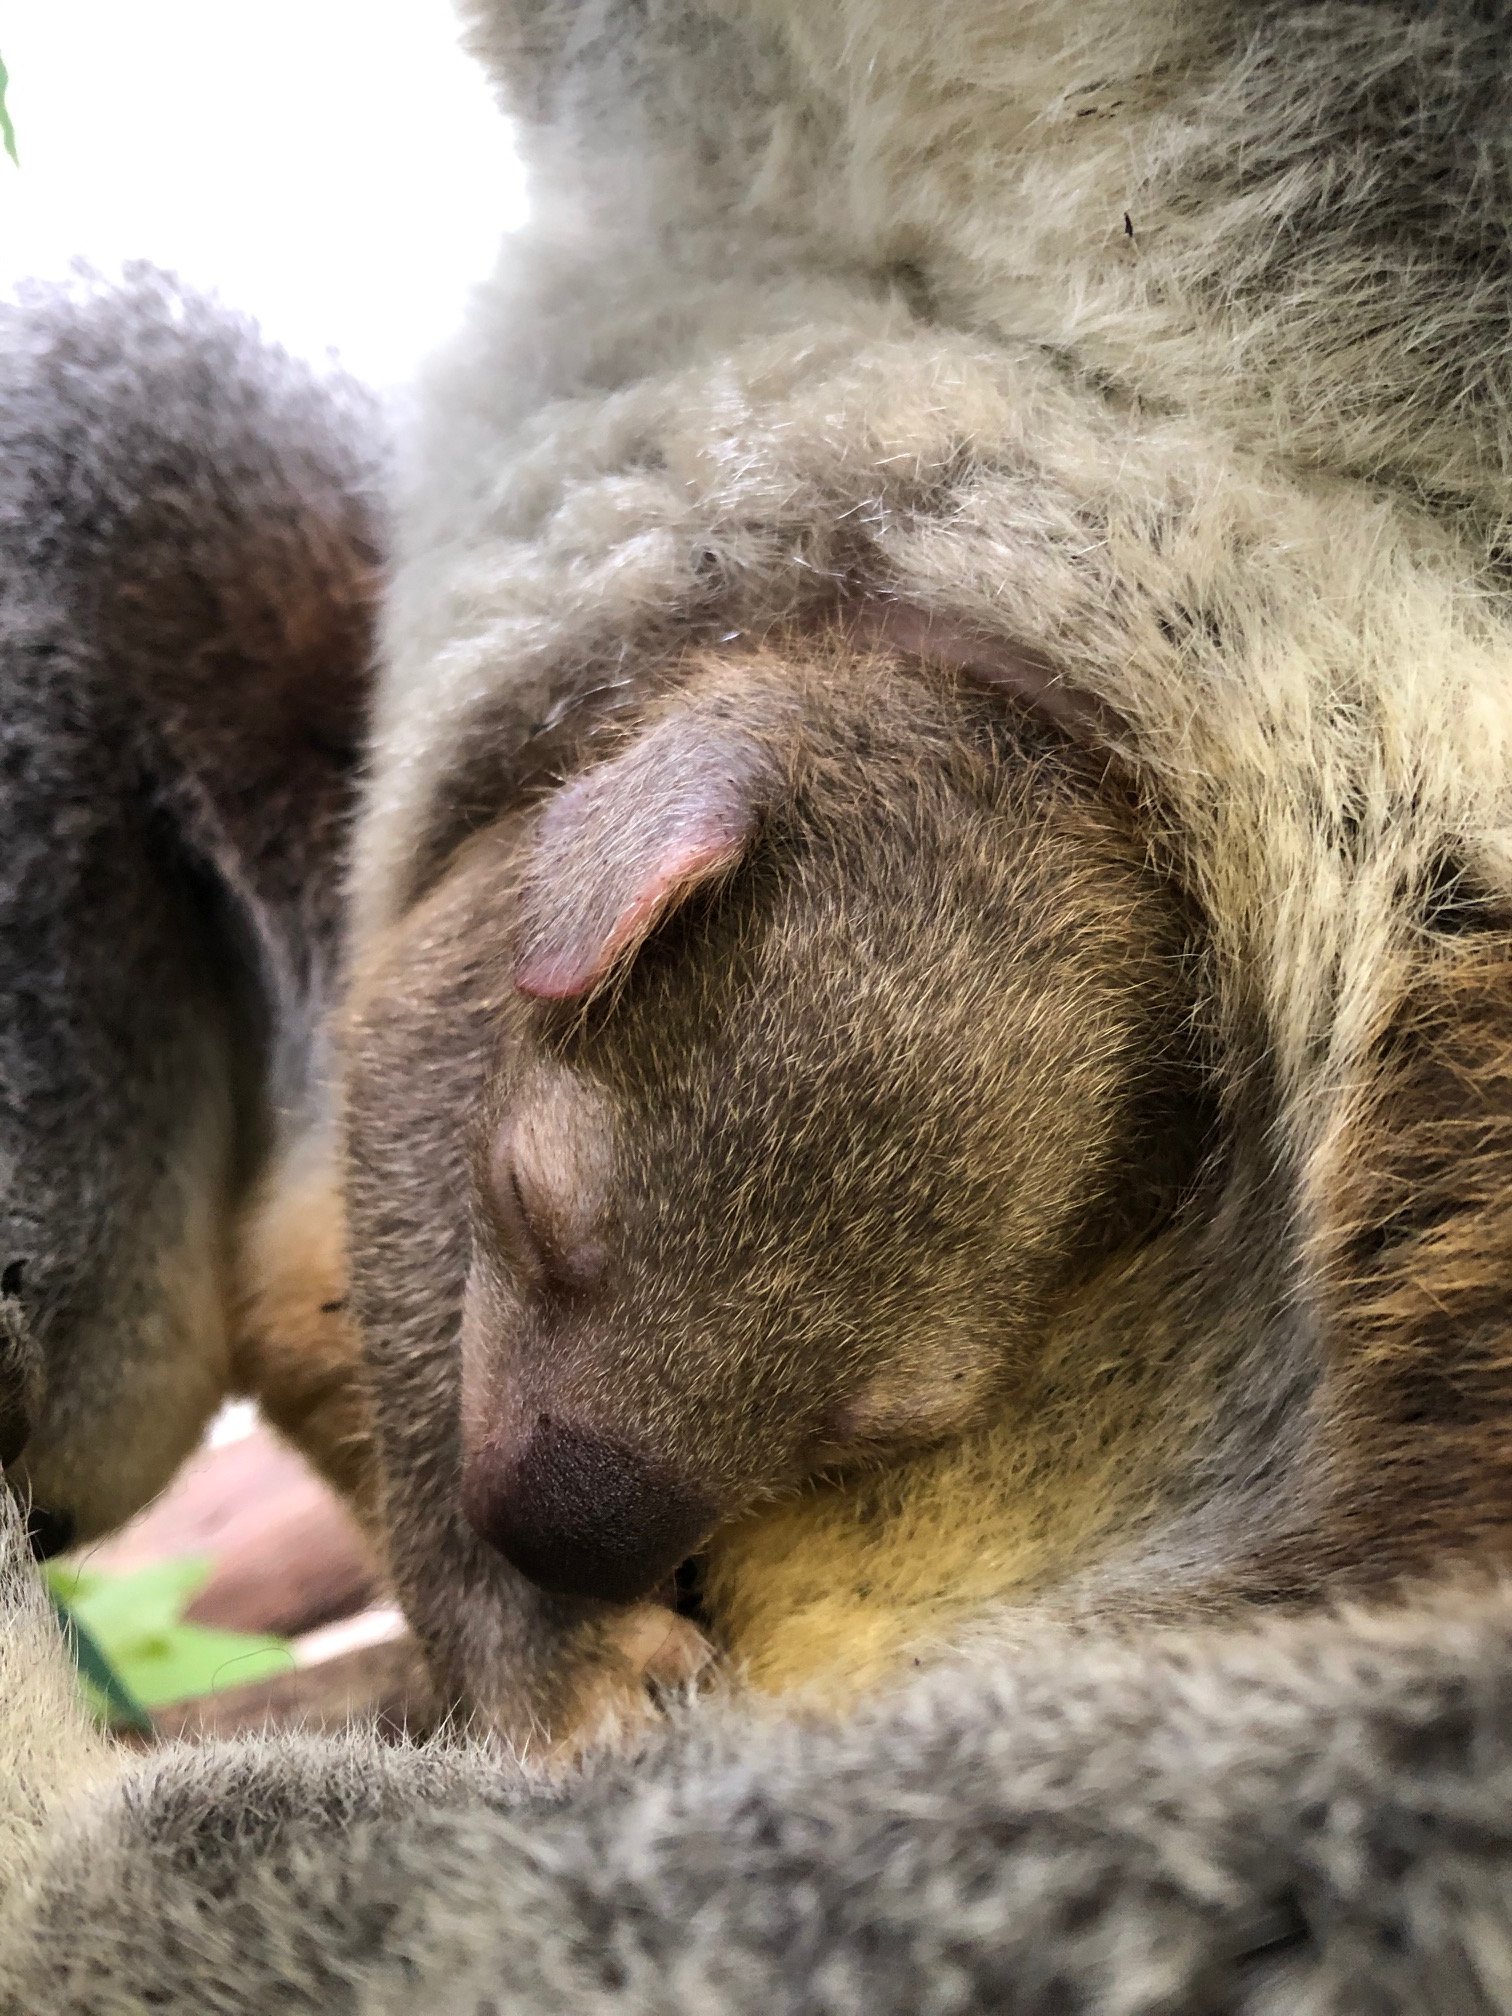 鹿児島市平川動物公園 コアラ の赤ちゃんは育児のう 袋 で育ちます 袋から出てくる直前は 頭が袋の入口からよく出てきます 母乳のみで育ってきた赤ちゃんが 母親からパップ という離乳食をもらって食べはじめます パップの中にはユーカリを消化するため